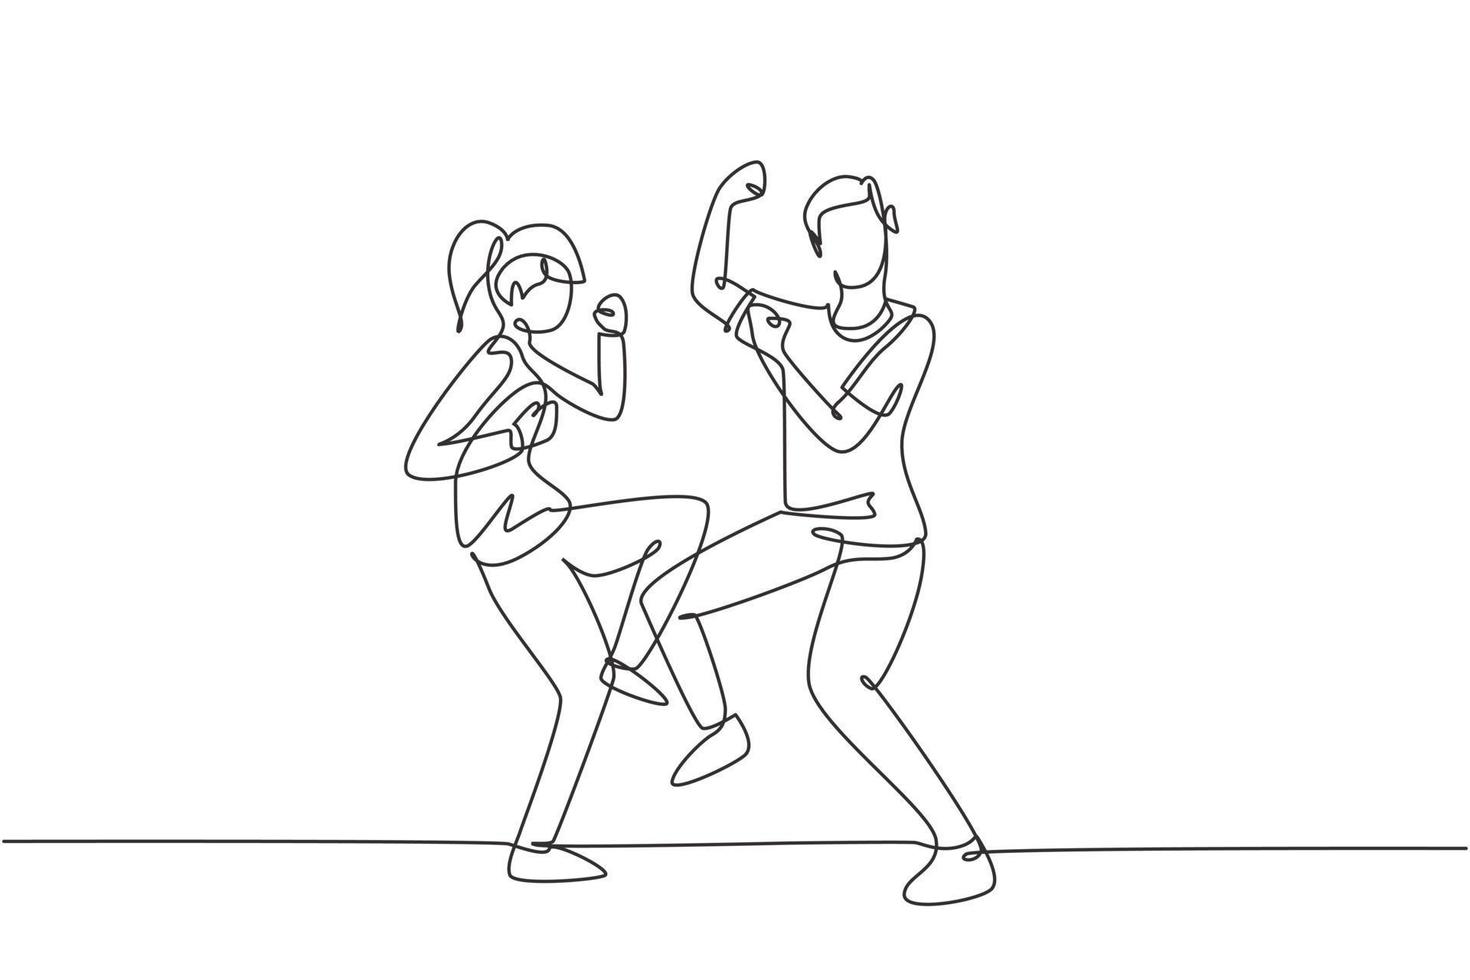 Single One Line Drawing Mann Frau tanzen Lindy Hop oder Swing zusammen. männliche und weibliche Charaktere, die in der Schule oder auf einer Party tanzen. moderne durchgehende Linie zeichnen Design-Grafik-Vektor-Illustration vektor